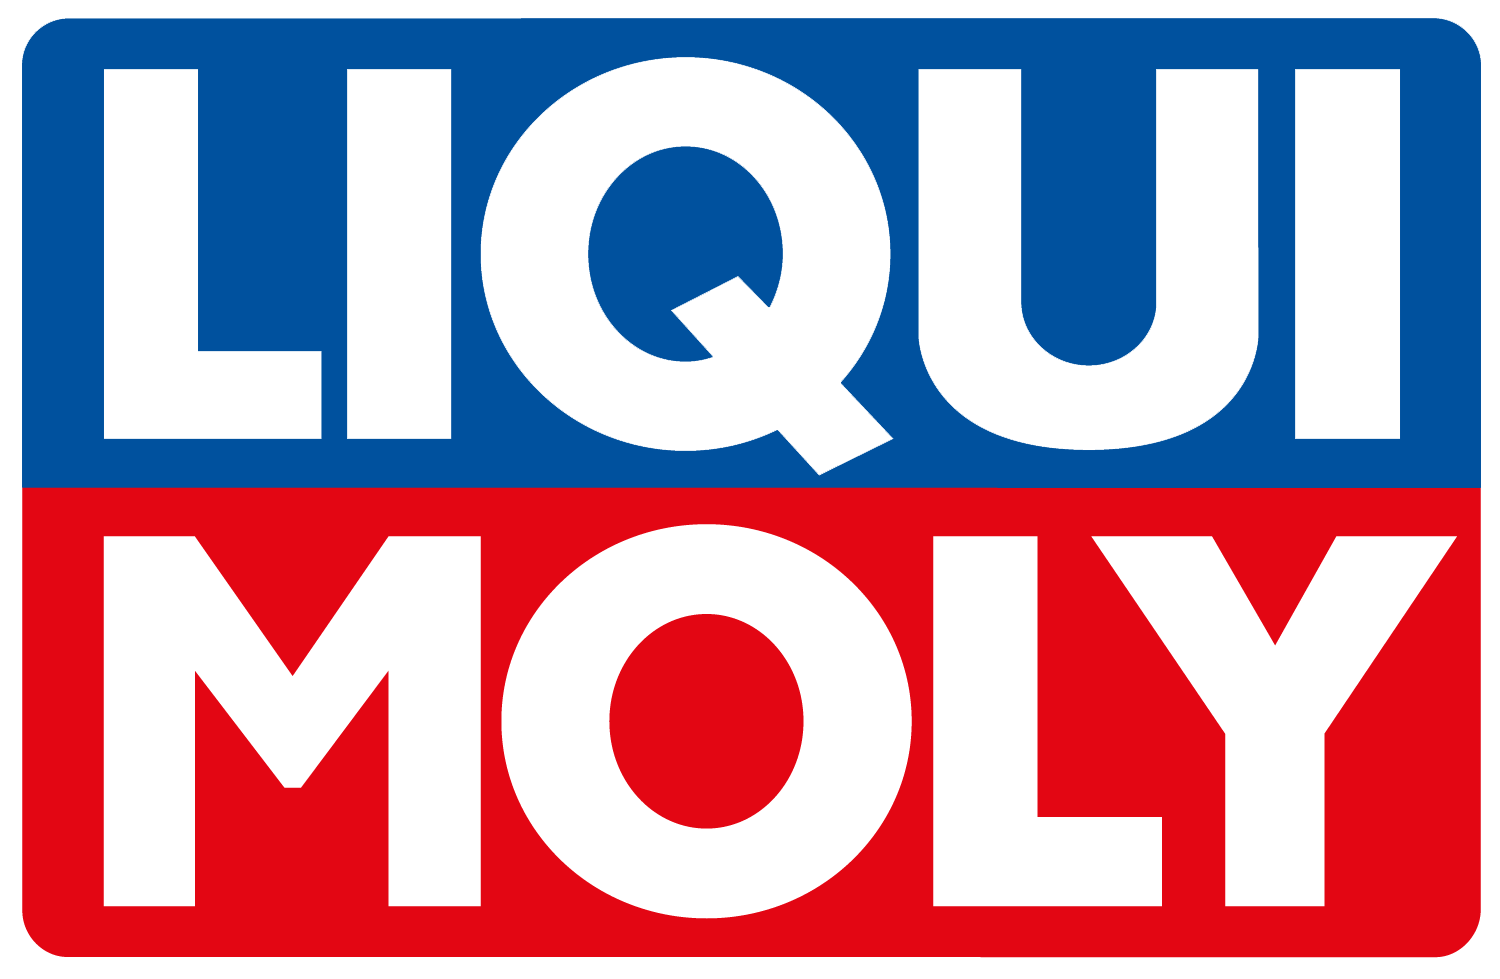 LIQUI MOLY Pro-Line Motorspülung (1 l) ab 12,27 €